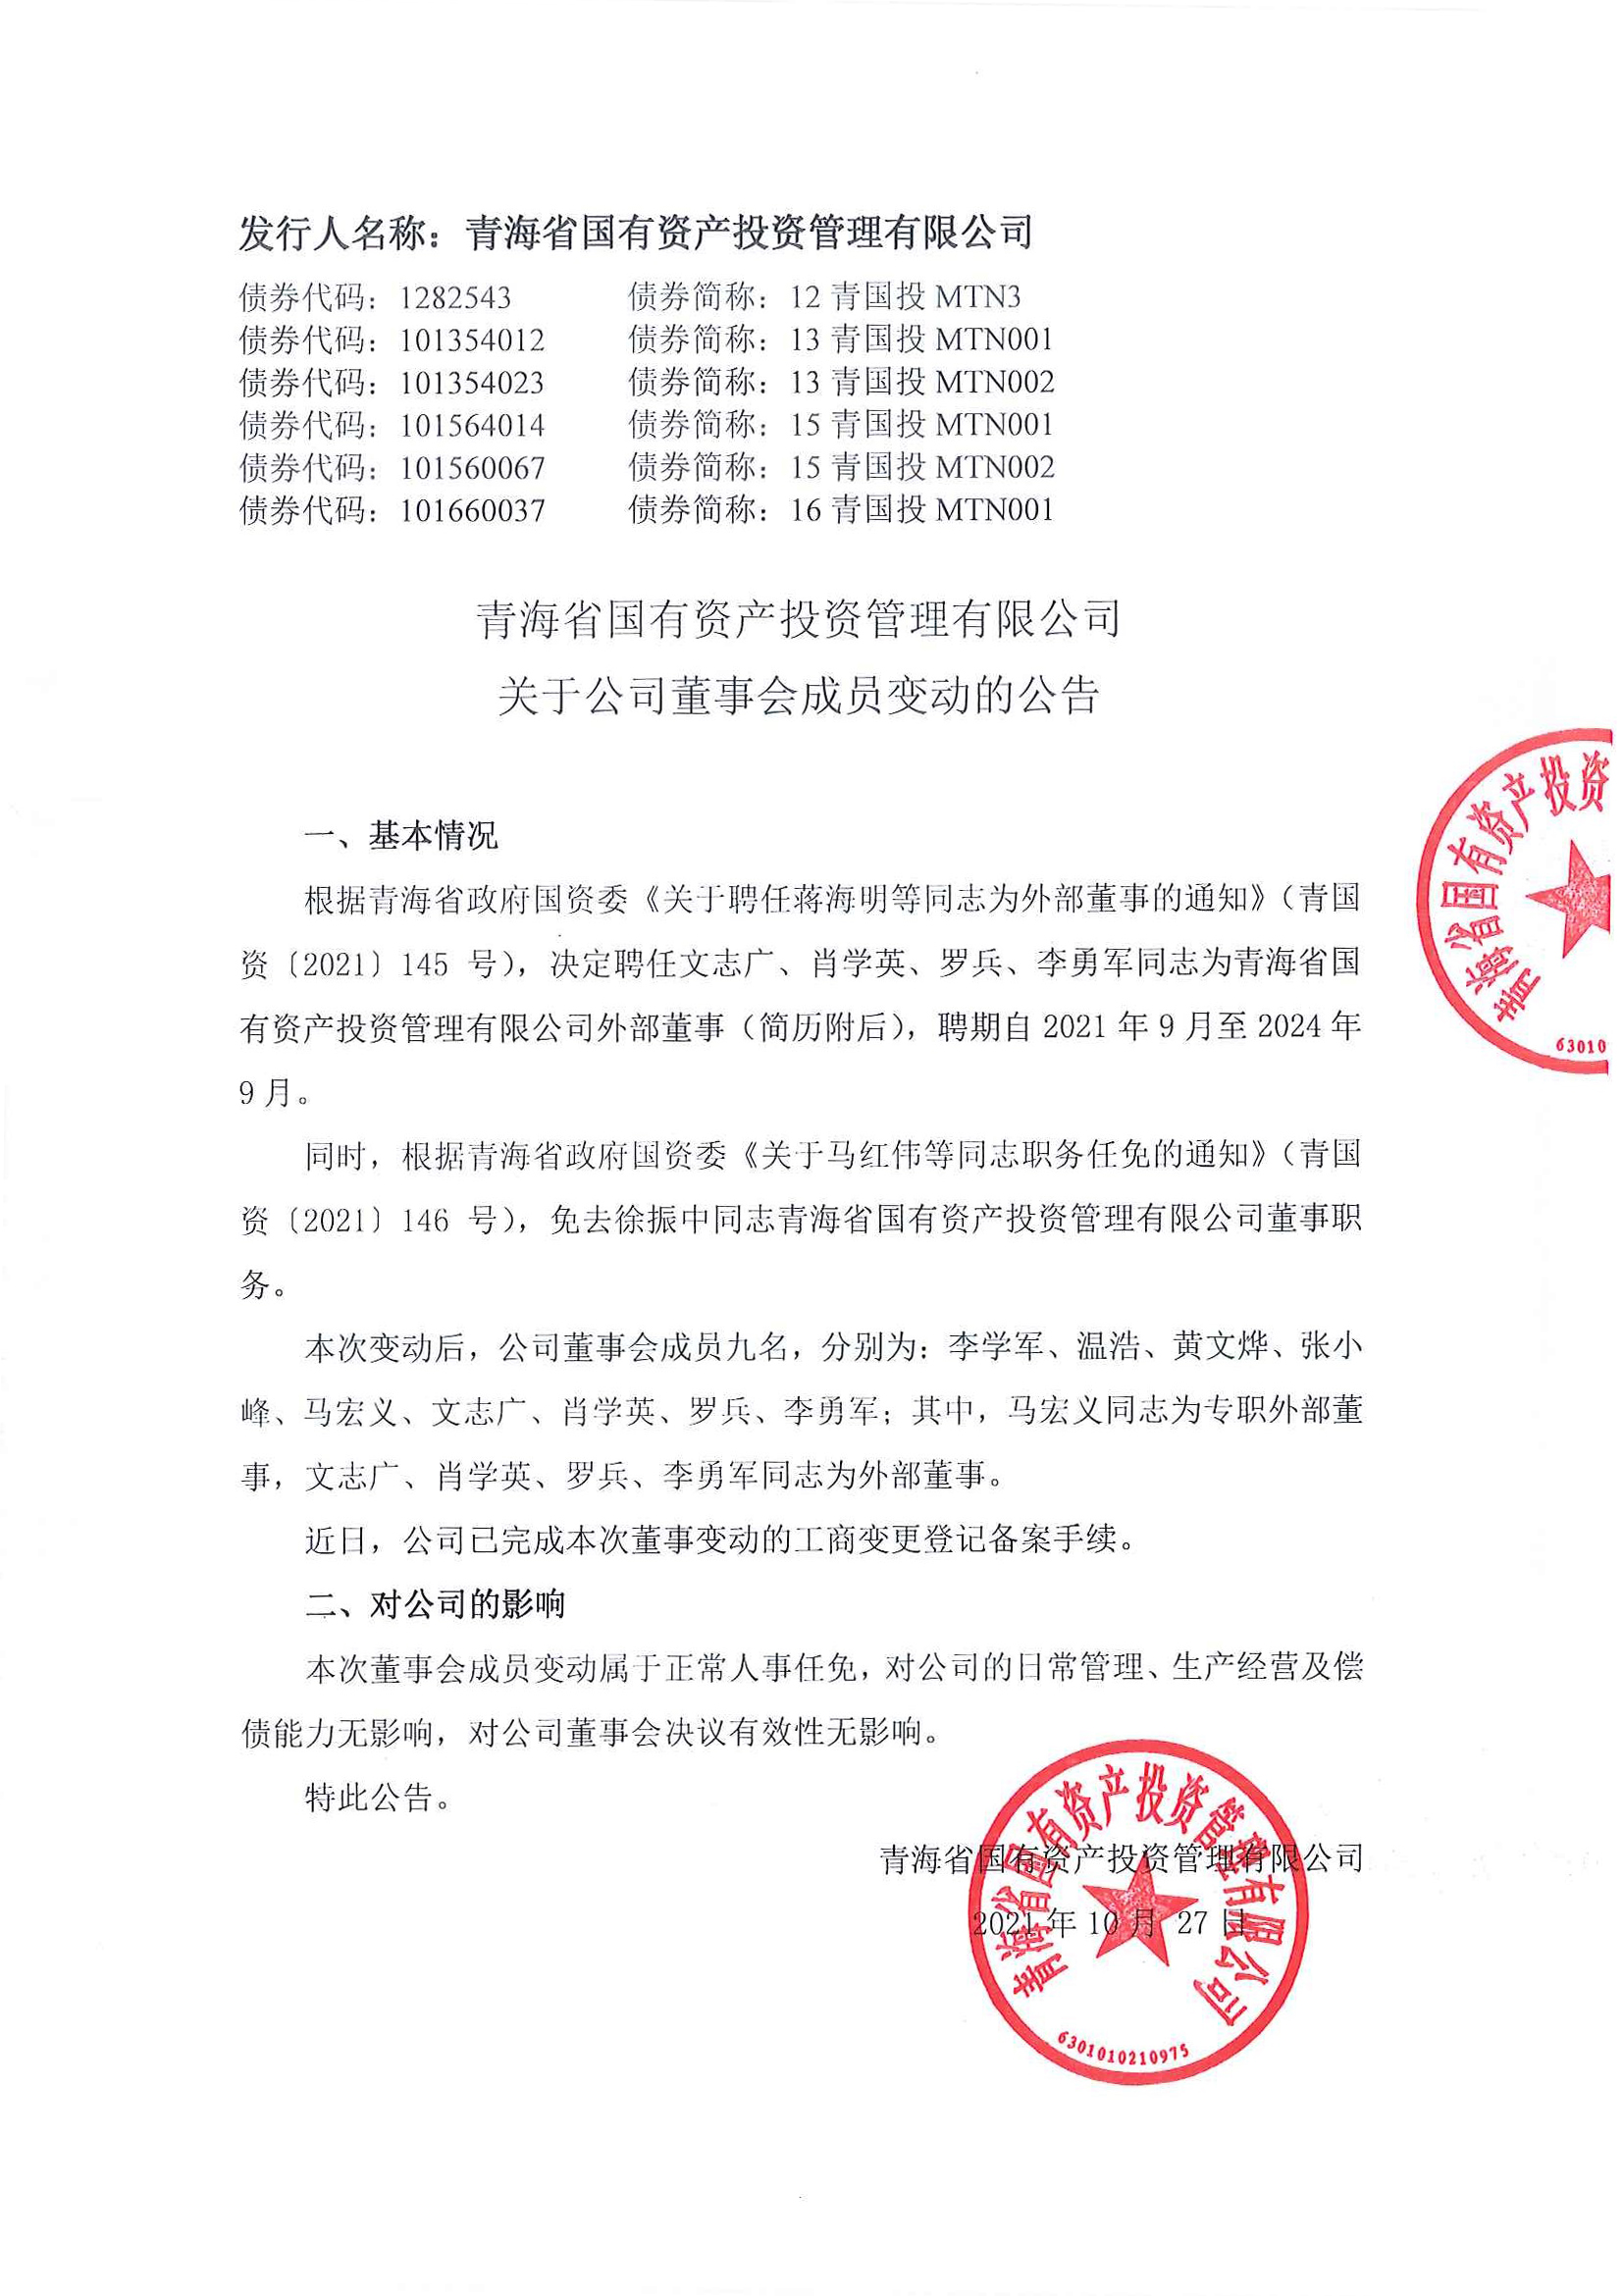 青海省国有资产投资管理有限公司关于公司董事会成员变动的公告